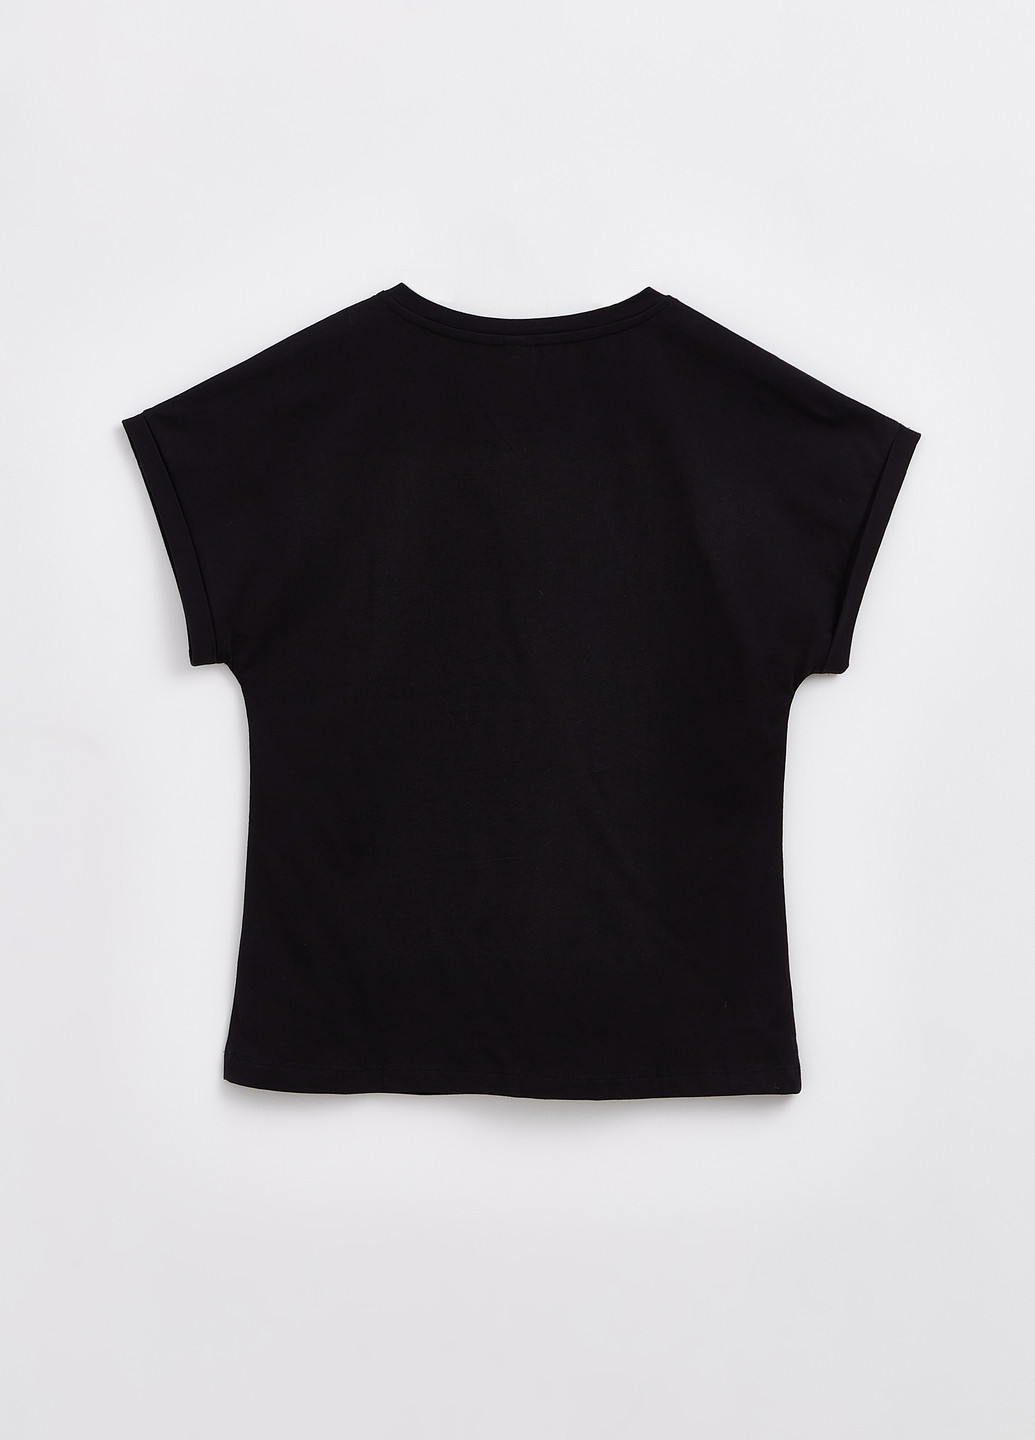 Черная всесезон женская футболка Conte CE LD 1232